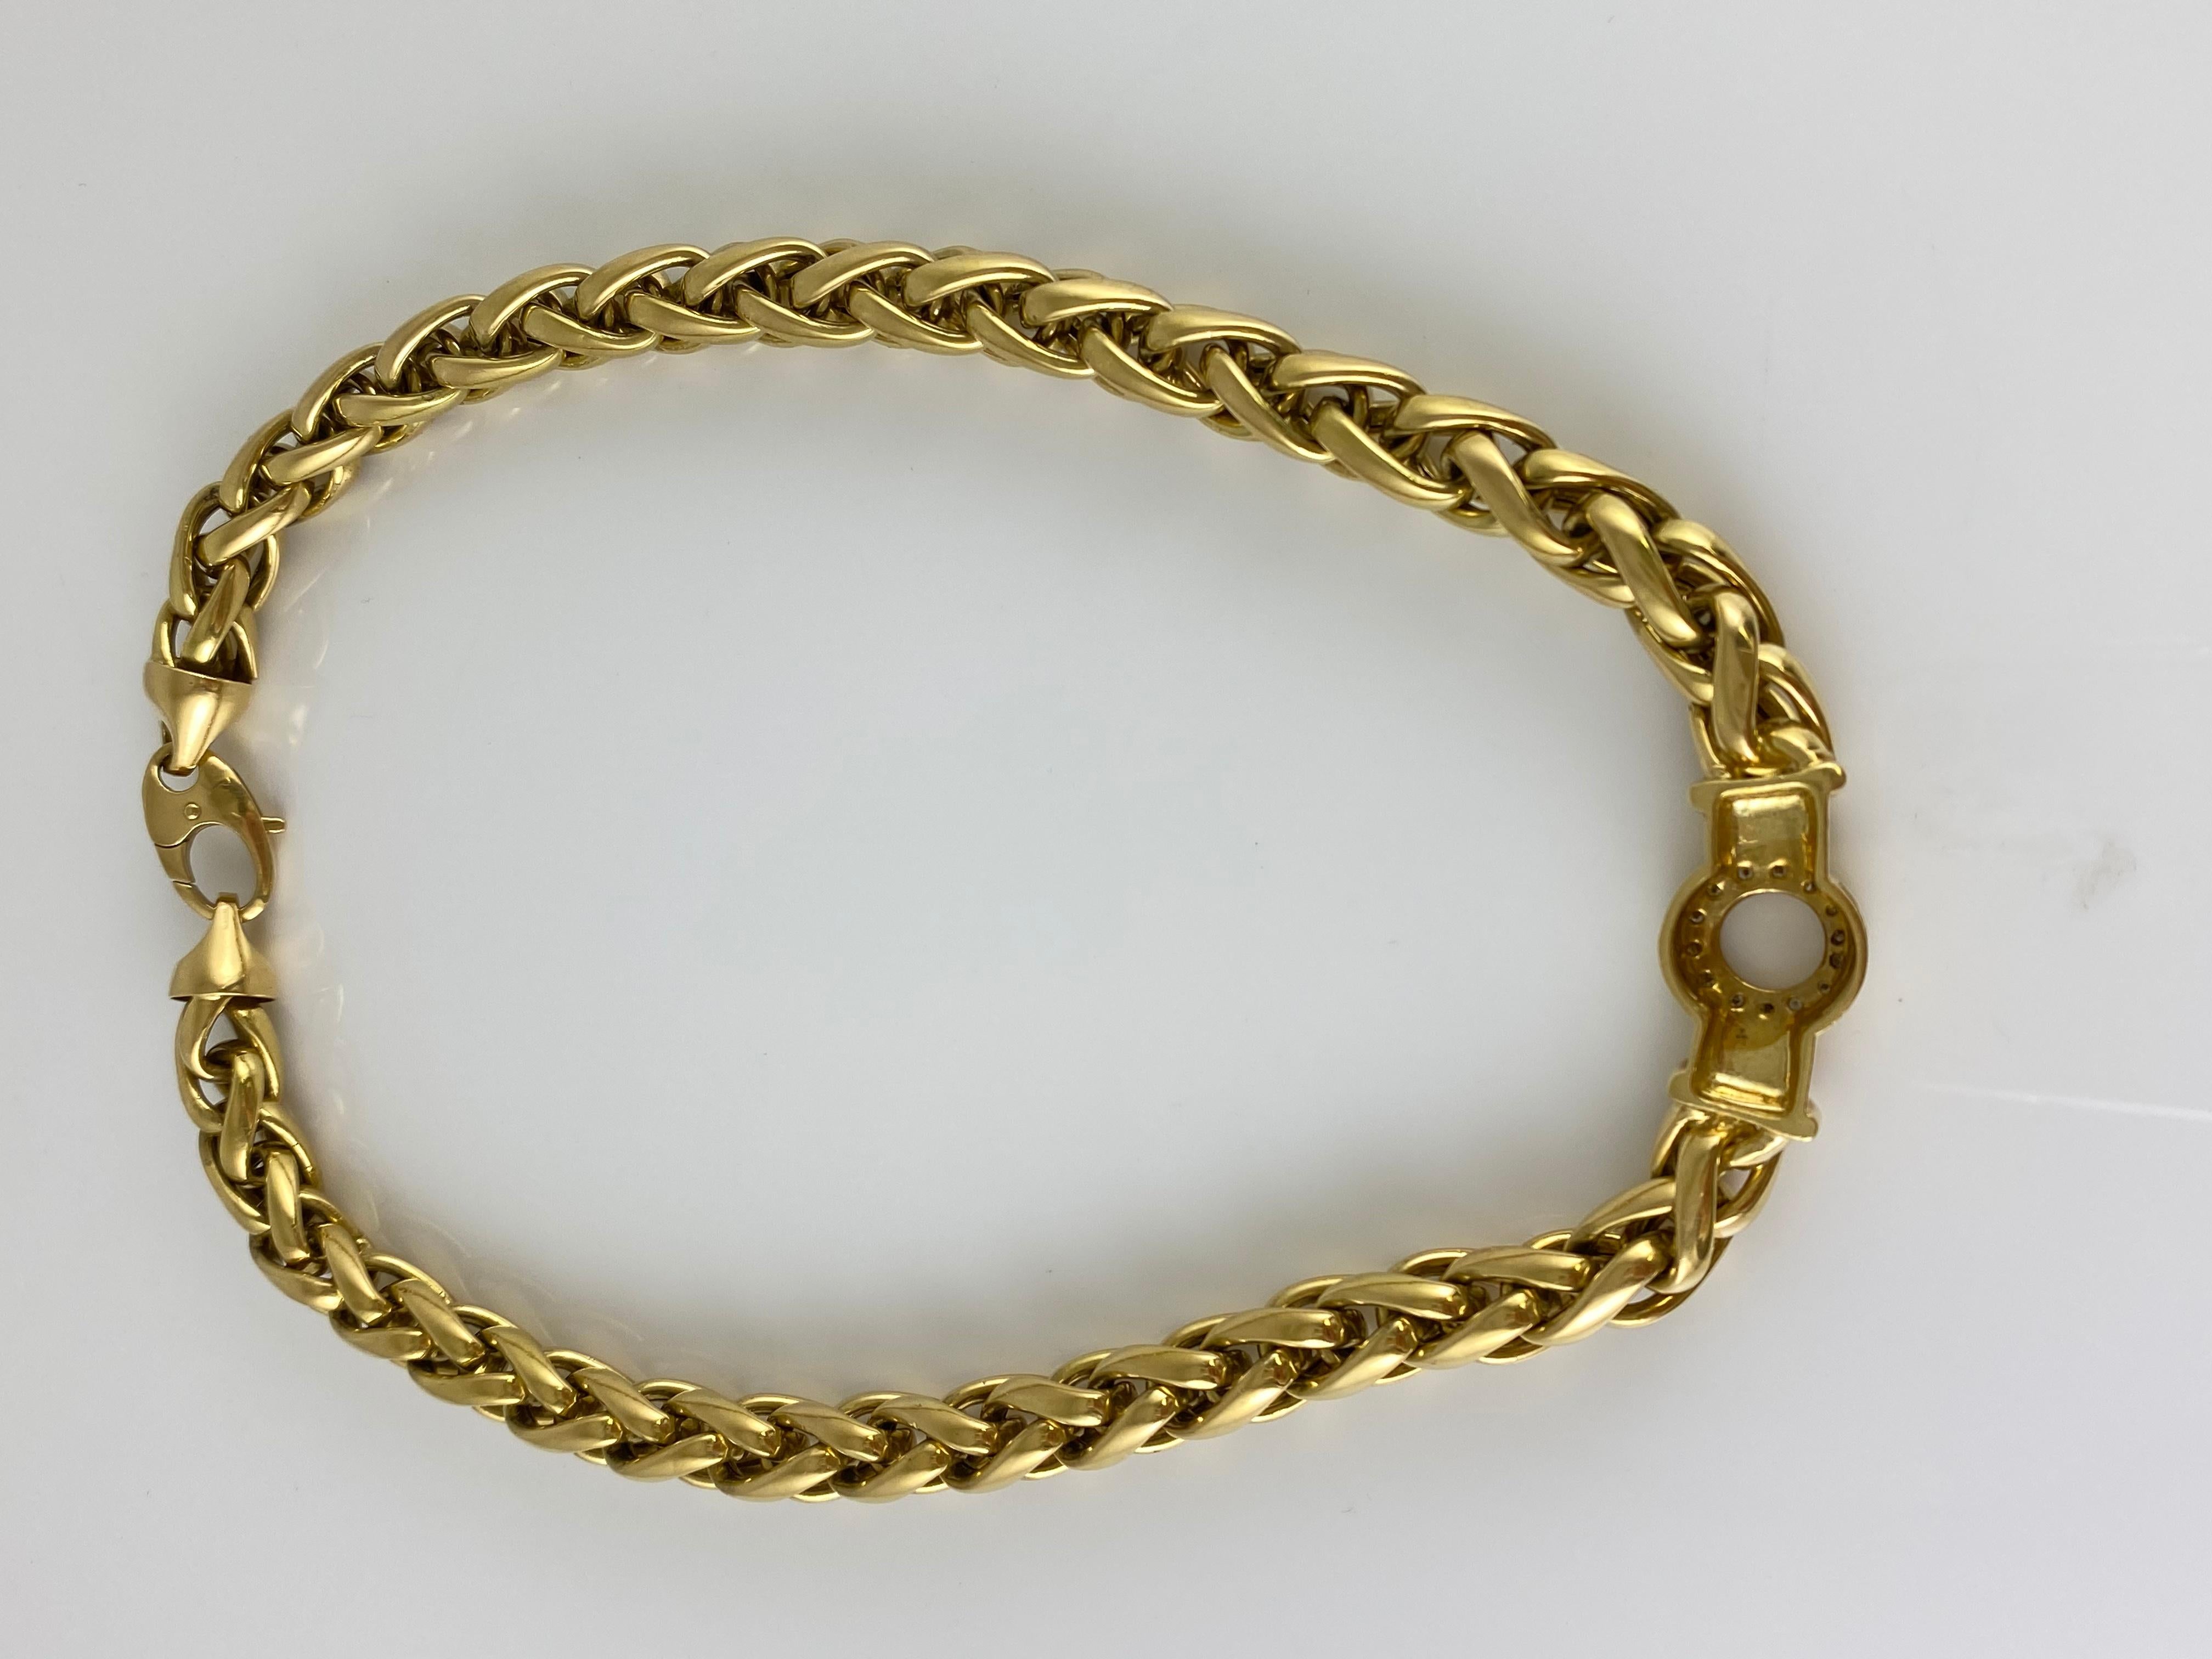 Die nwcklace ist fein in Handarbeit in 18k Gelbgold mit Diamanten mit einem Gesamtgewicht von etwa 0,56 Karat und das Gold mit einem Gesamtgewicht von etwa 59,1 DWT.
Länge: 17,5 Zoll